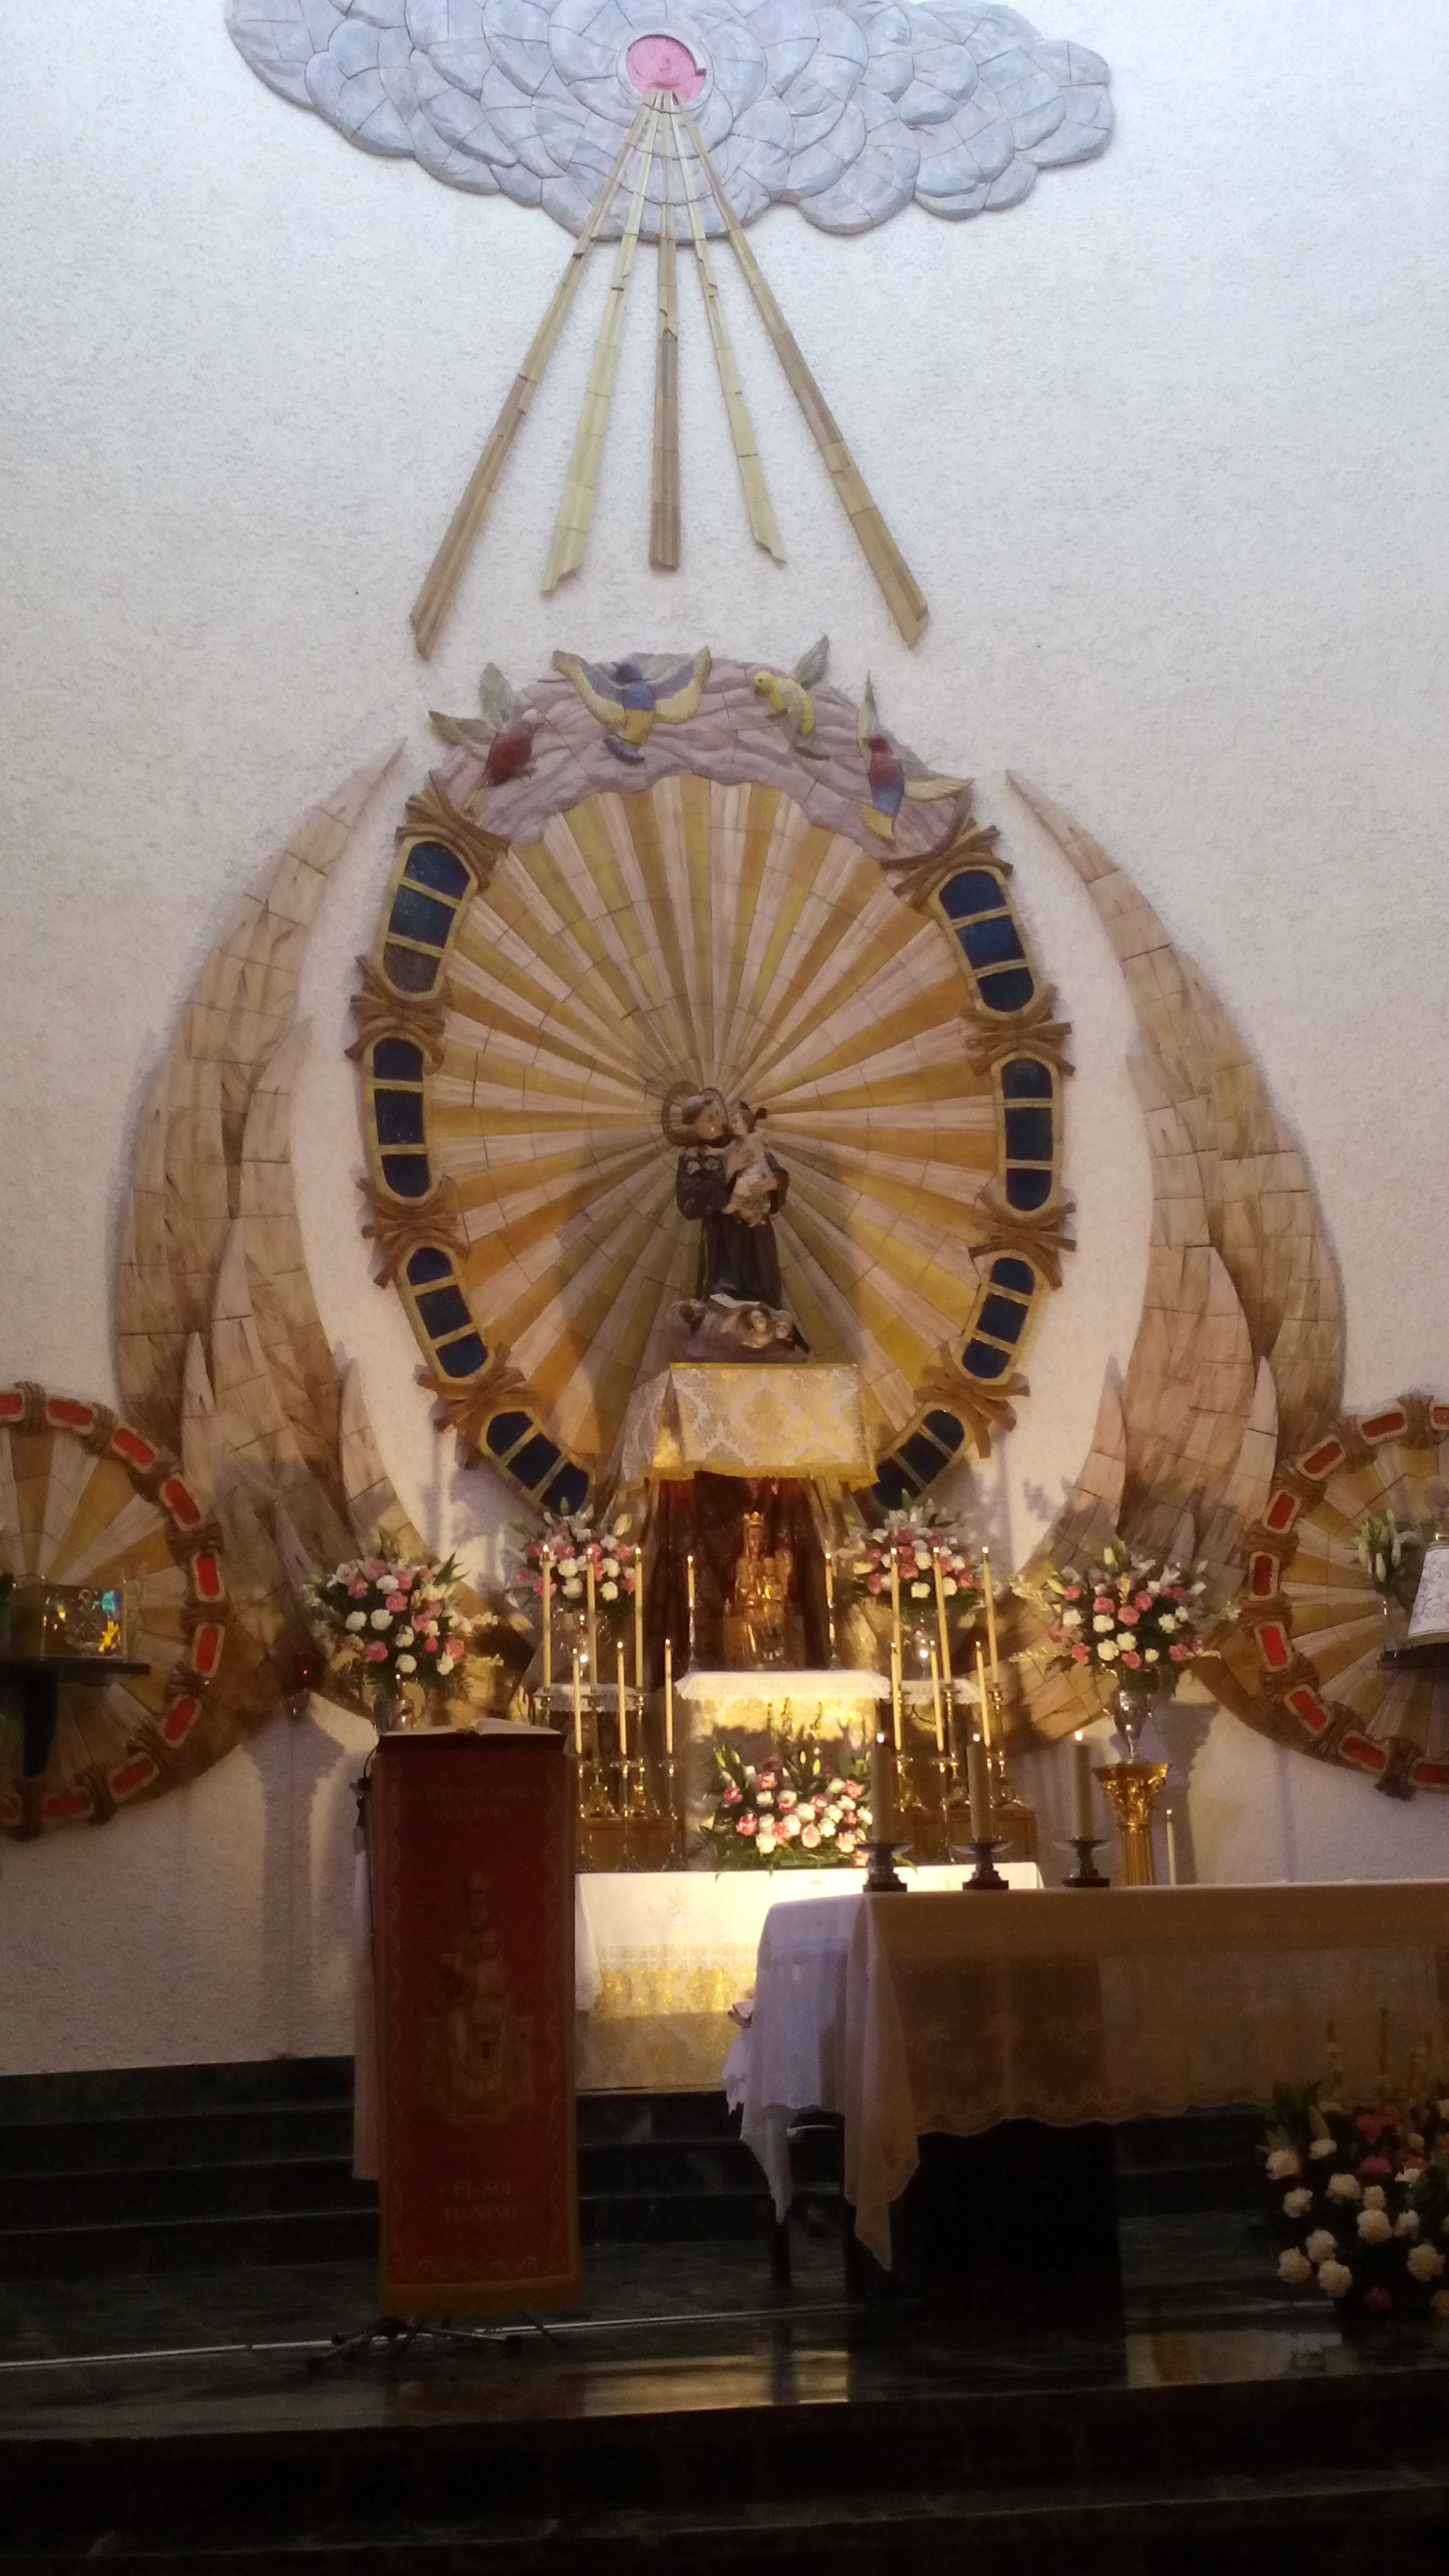 Foto: 15-9-2019 La Virgen de la Peña llega a San Antonio - Calatayud (Zaragoza), España